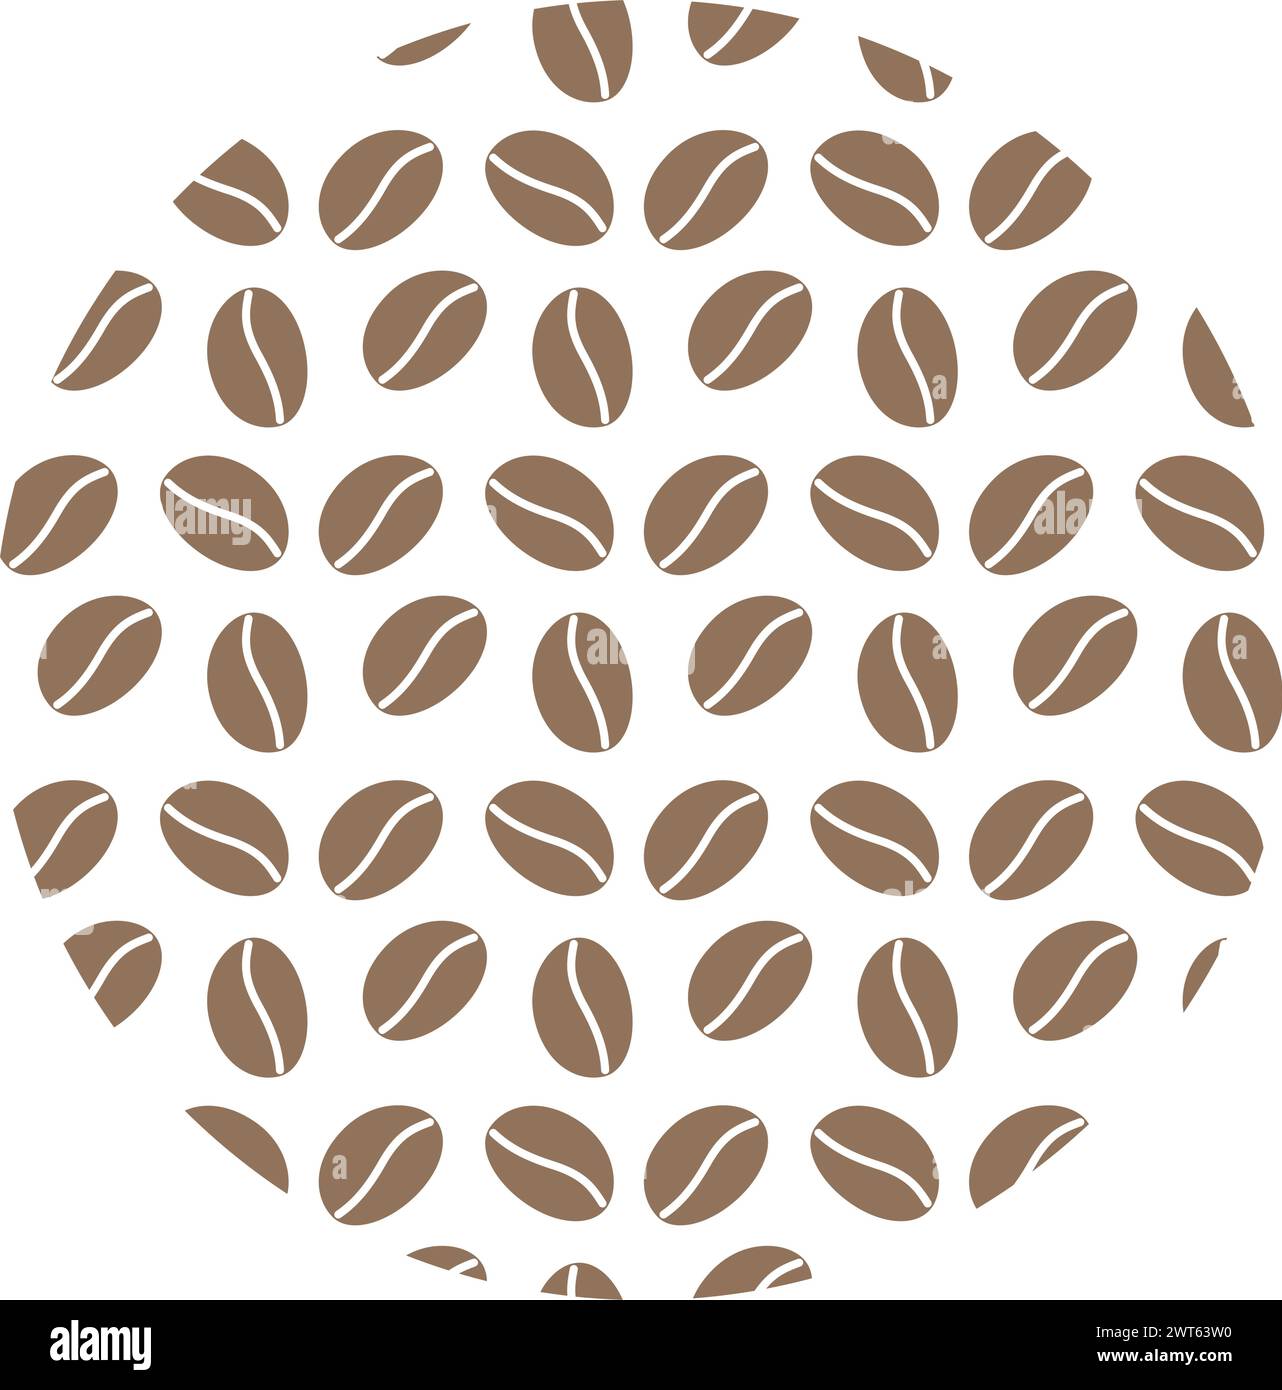 Chicchi di caffè a forma circolare. Forma circolare a motivi geometrici in stile minimalista trama di sfondo astratta. Isolare EPS. Vettore per schede, poster, striscioni, cartelloni pubblicitari, brochure, prezzo, etichetta, sfondo o web Illustrazione Vettoriale